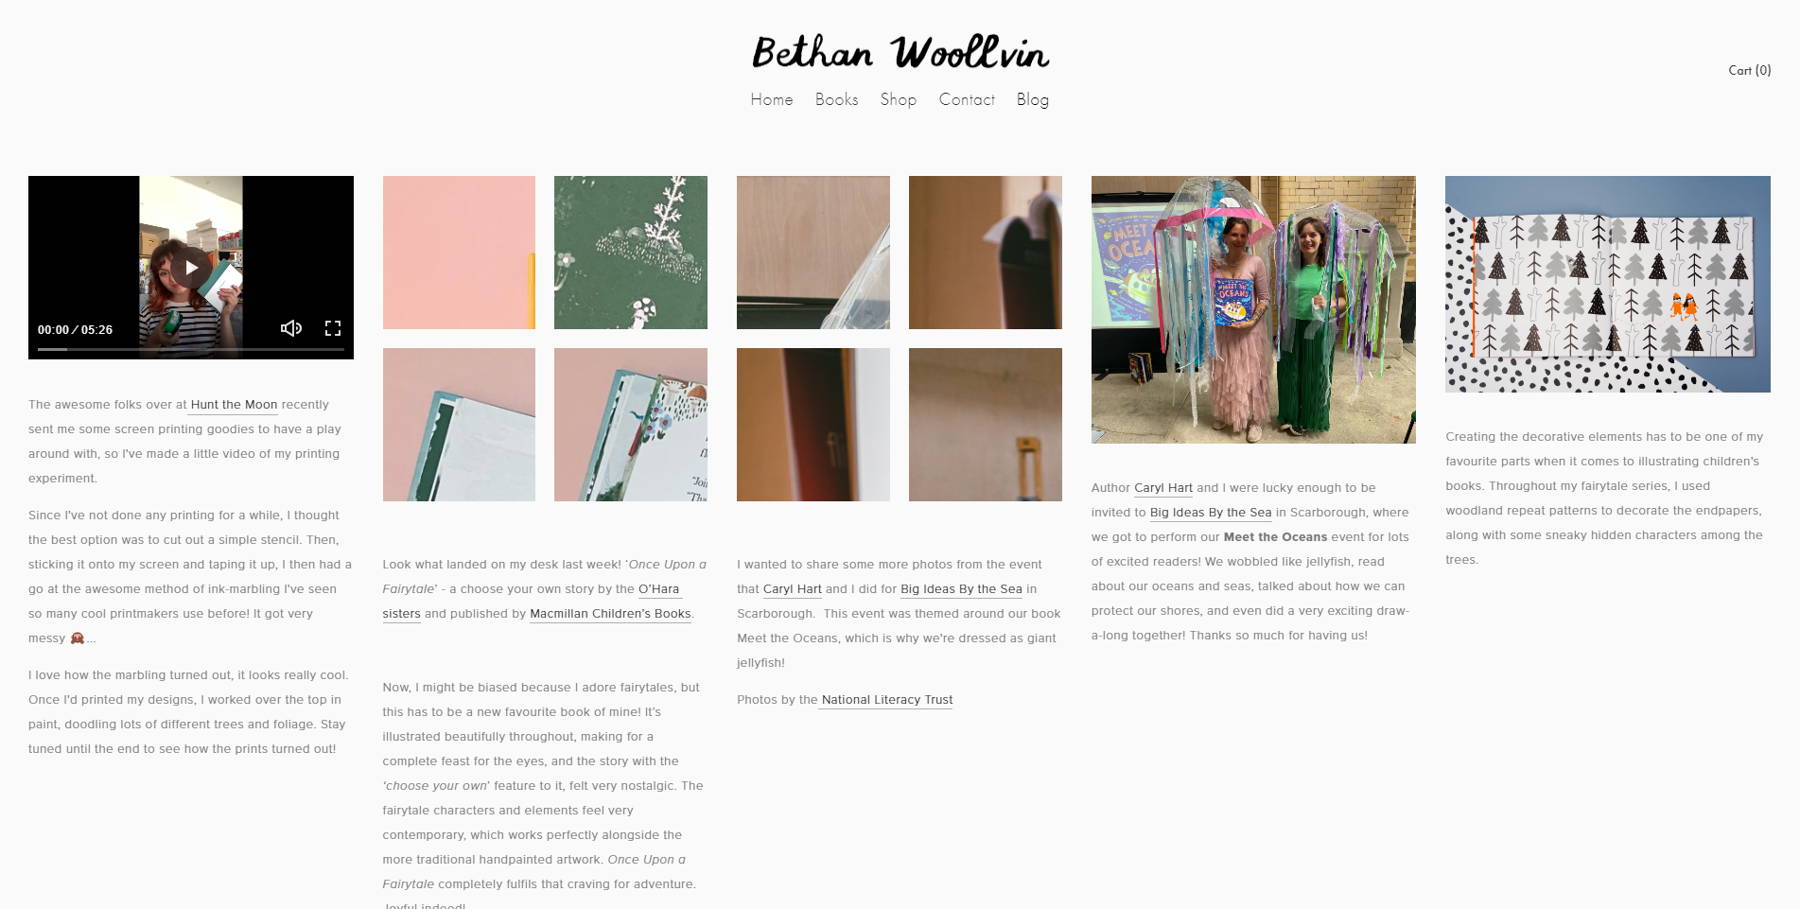 Скриншот блога — Бетан Вуллвин, из коллекции примеров блогов.